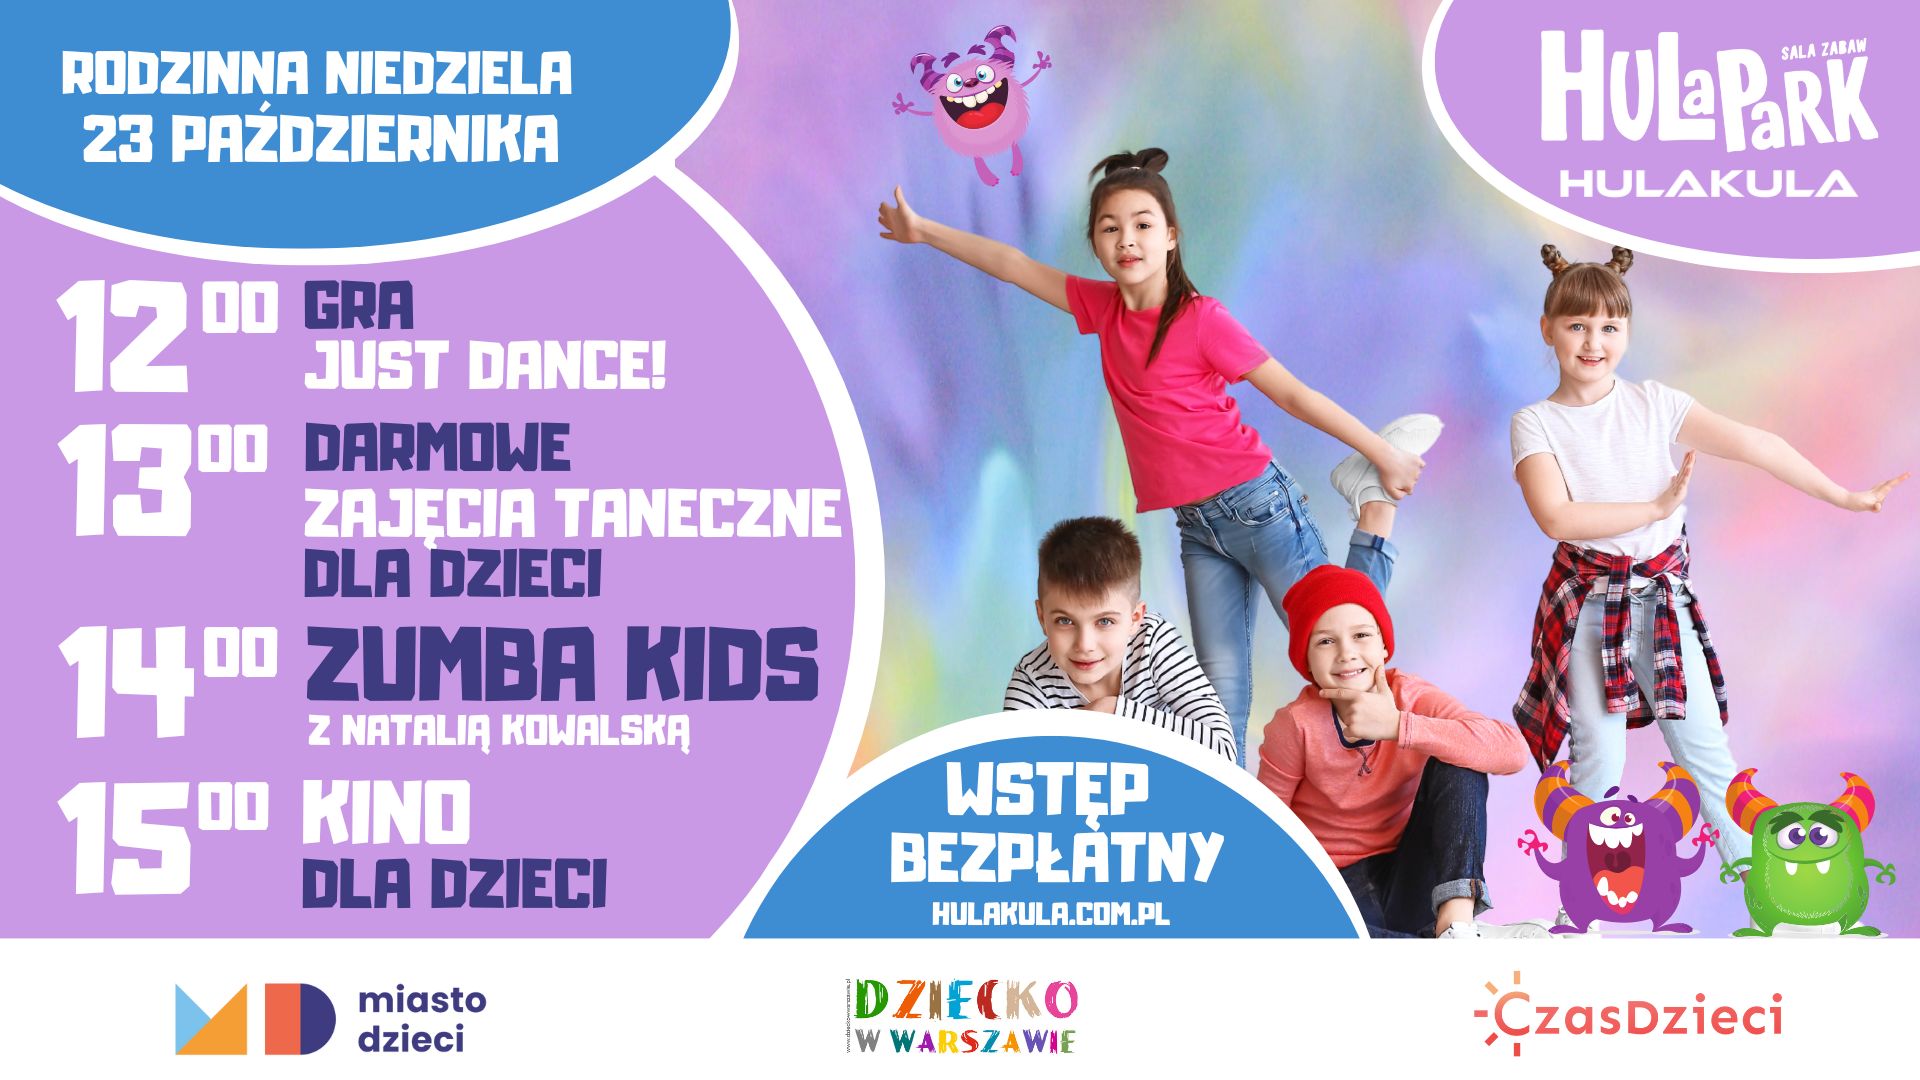 Zumba Kids - Rodzinna Niedziela w Hulakula